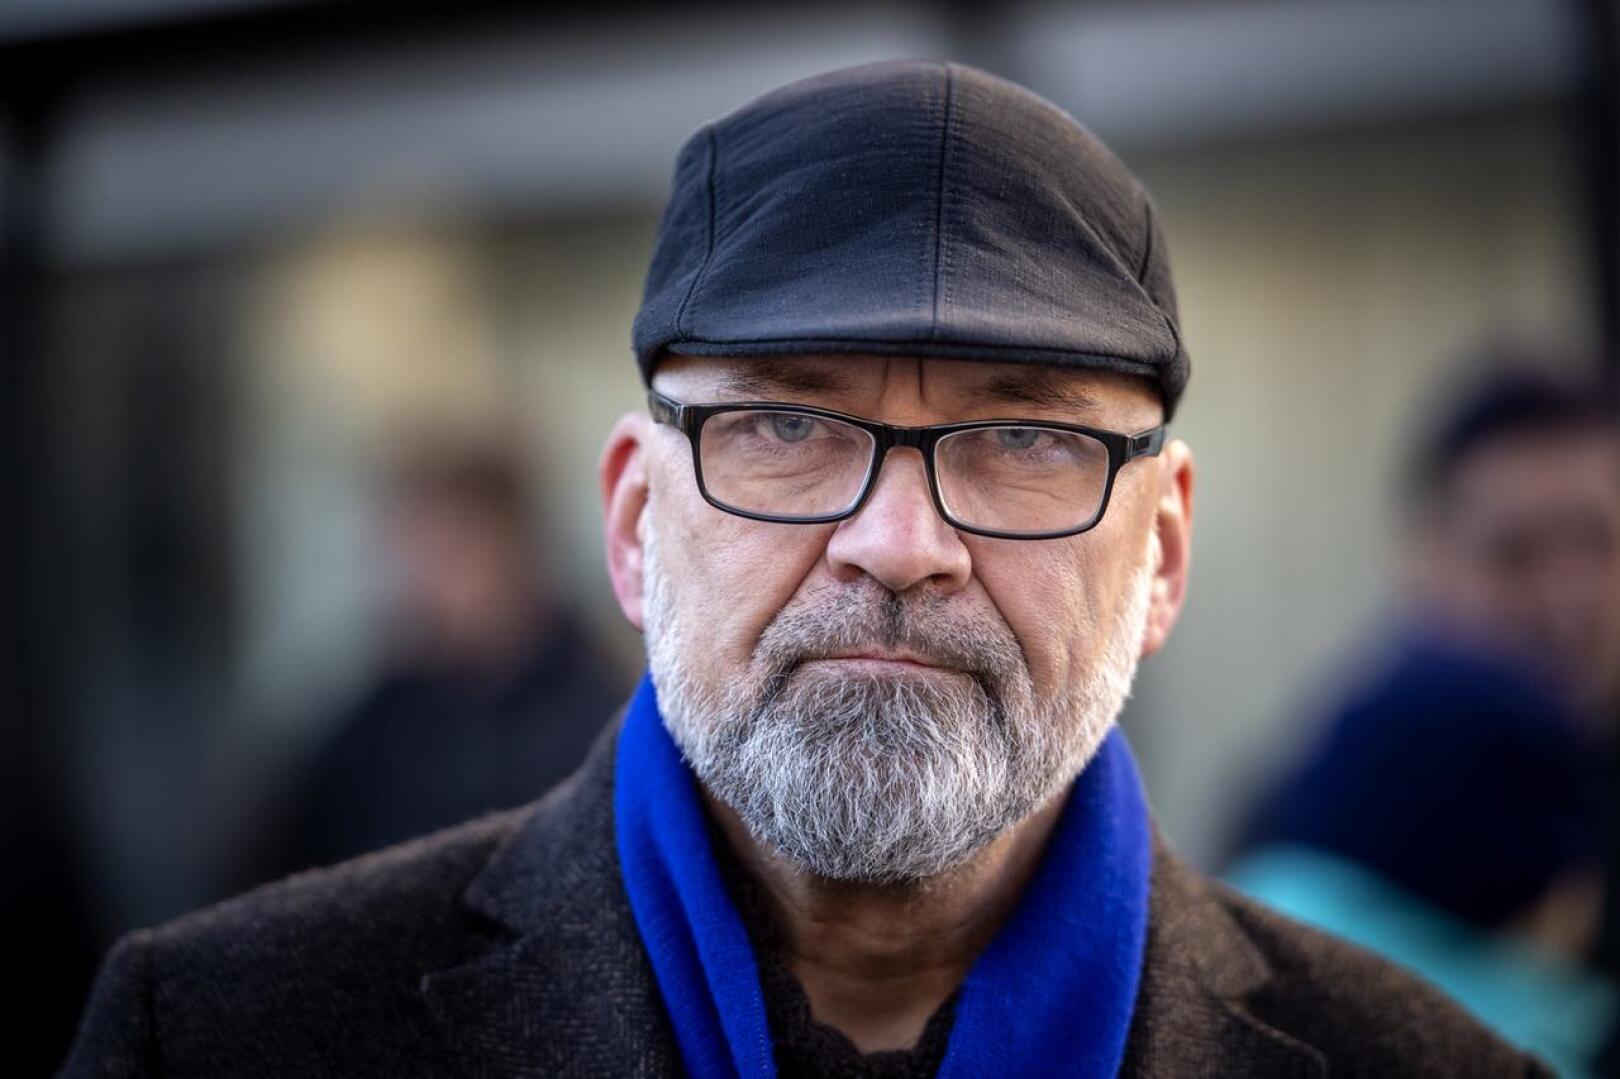 Perussuomalaisten kokkolalainen kansanedustaja Mauri Peltokangas on saanut myös Vaasan hovioikeudelta vapauttavan tuomion jutussa, jossa häntä syytettiin kiihottamisesta kansanryhmää vastaan.